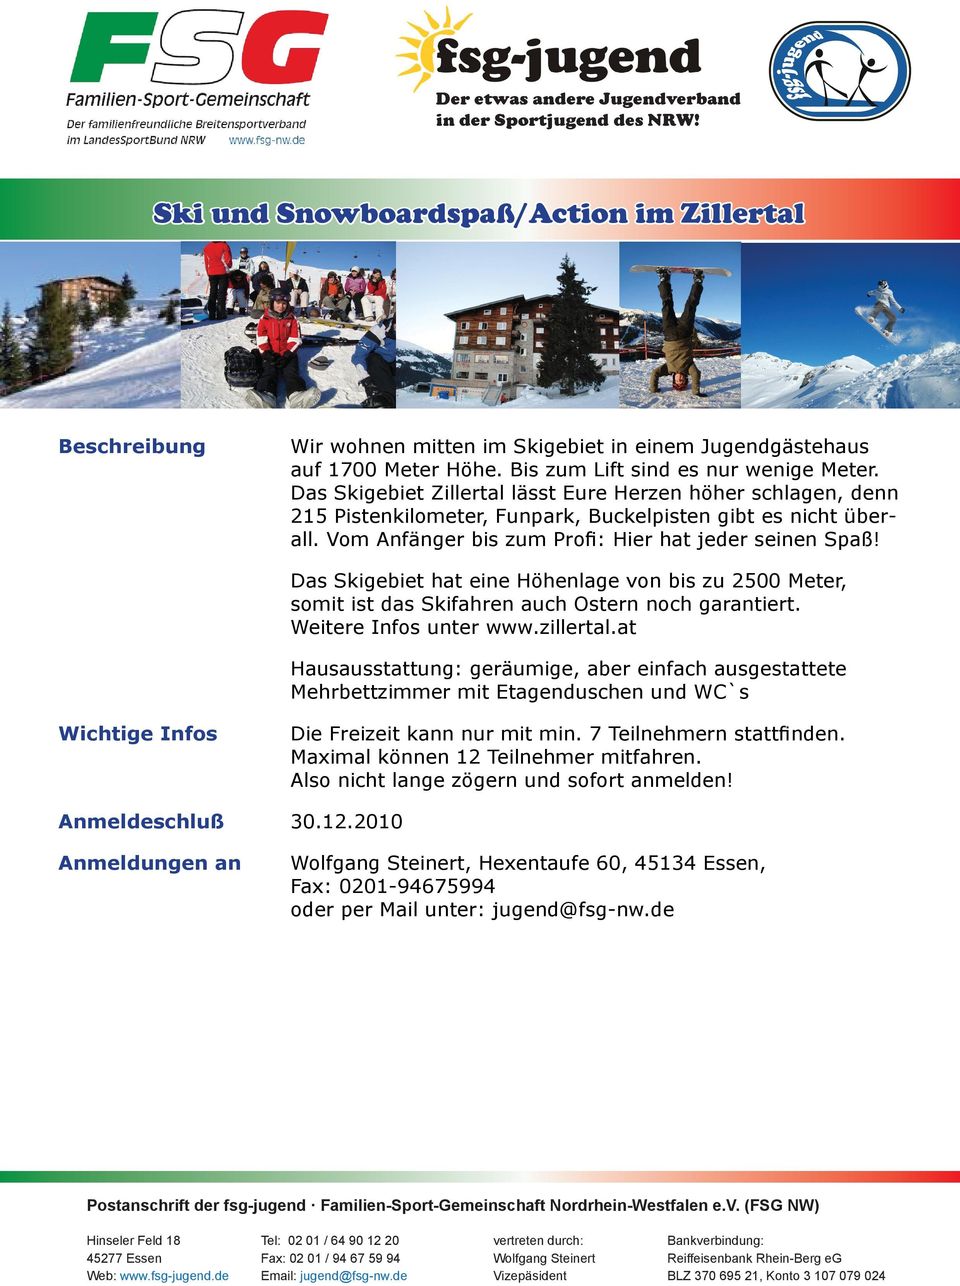 Das Skigebiet hat eine Höhenlage von bis zu 2500 Meter, somit ist das Skifahren auch Ostern noch garantiert. Weitere Infos unter www.zillertal.